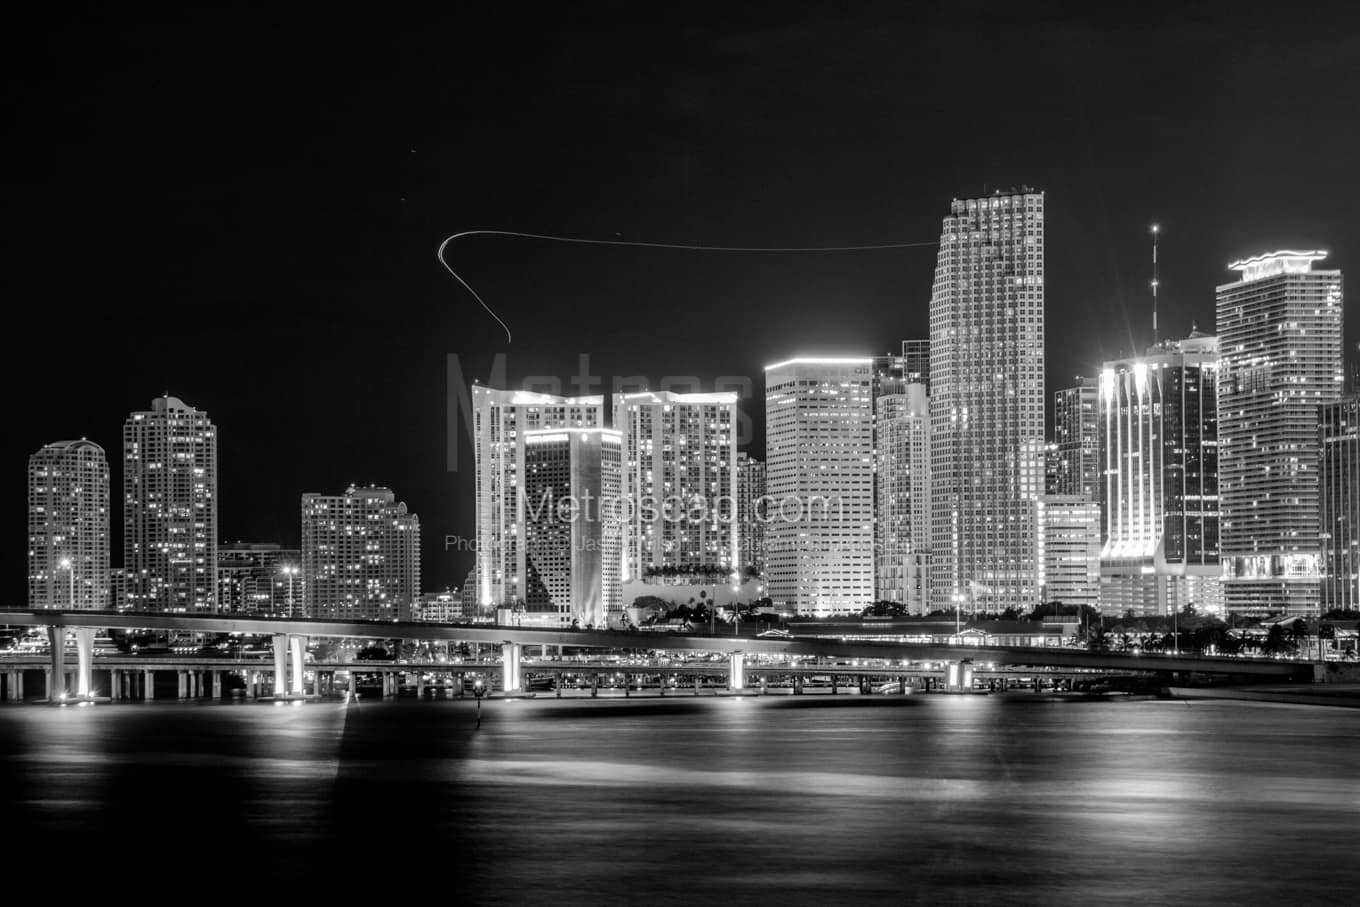 Black & White Miami Architecture Pictures